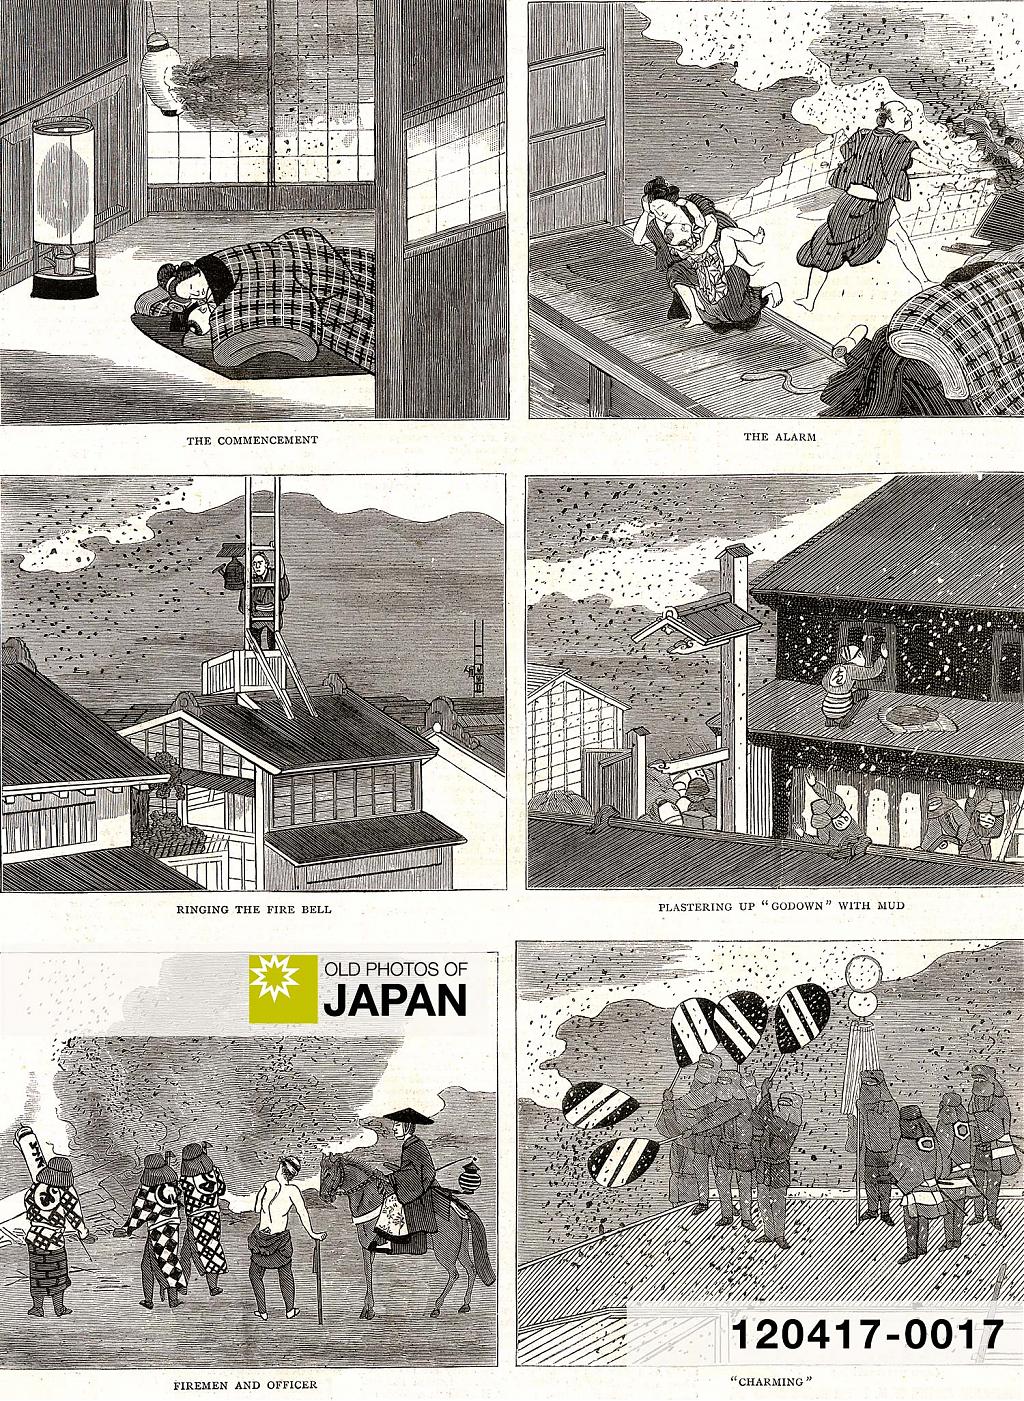 120417-0017 - Fire in Japan, 1878